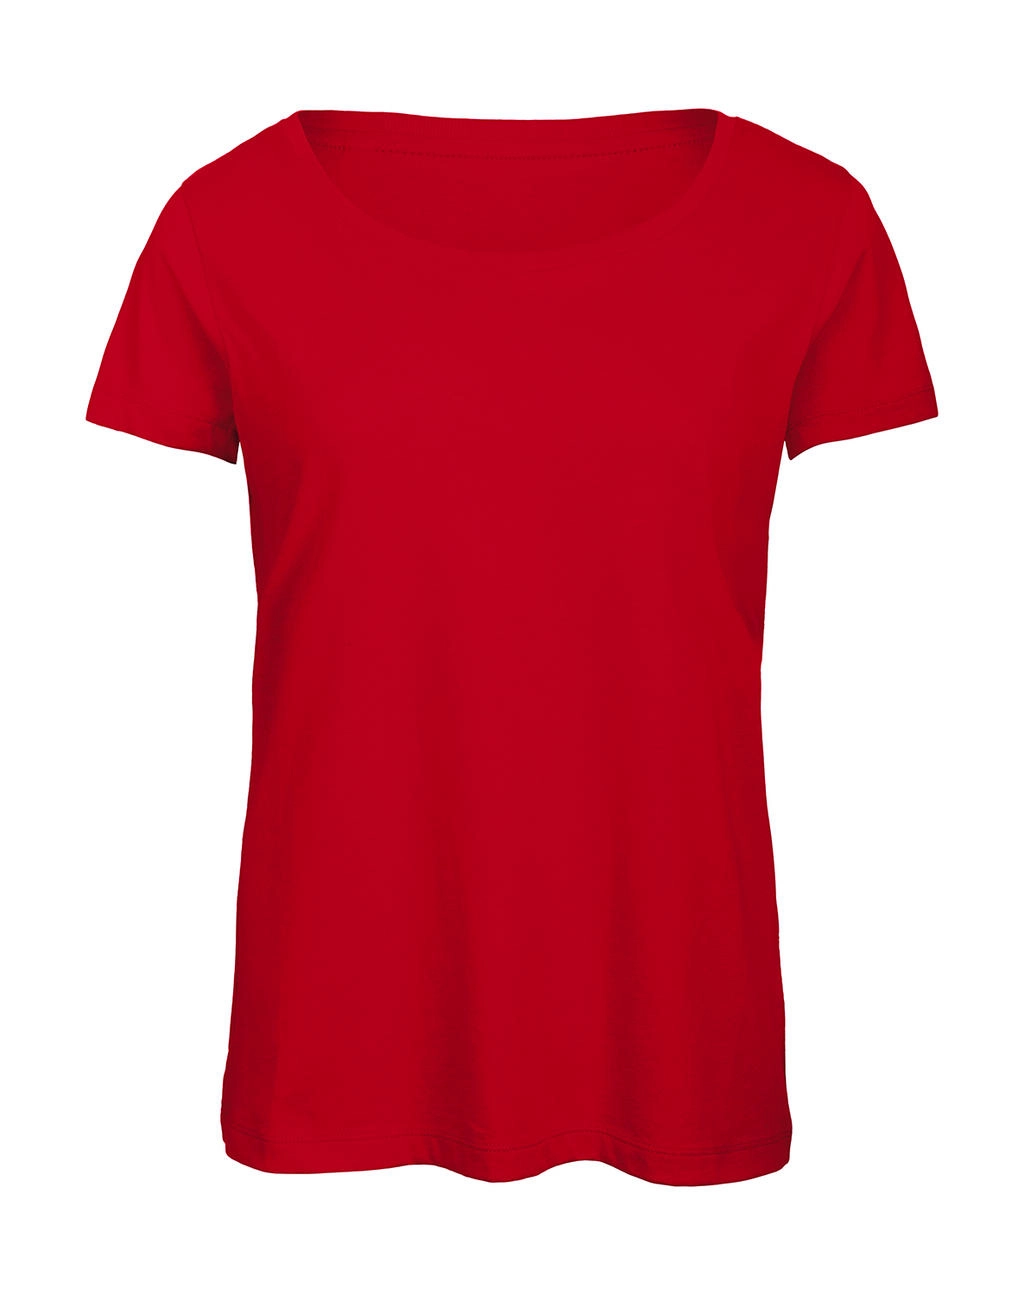 Triblend/women T-Shirt zum Besticken und Bedrucken in der Farbe Red mit Ihren Logo, Schriftzug oder Motiv.